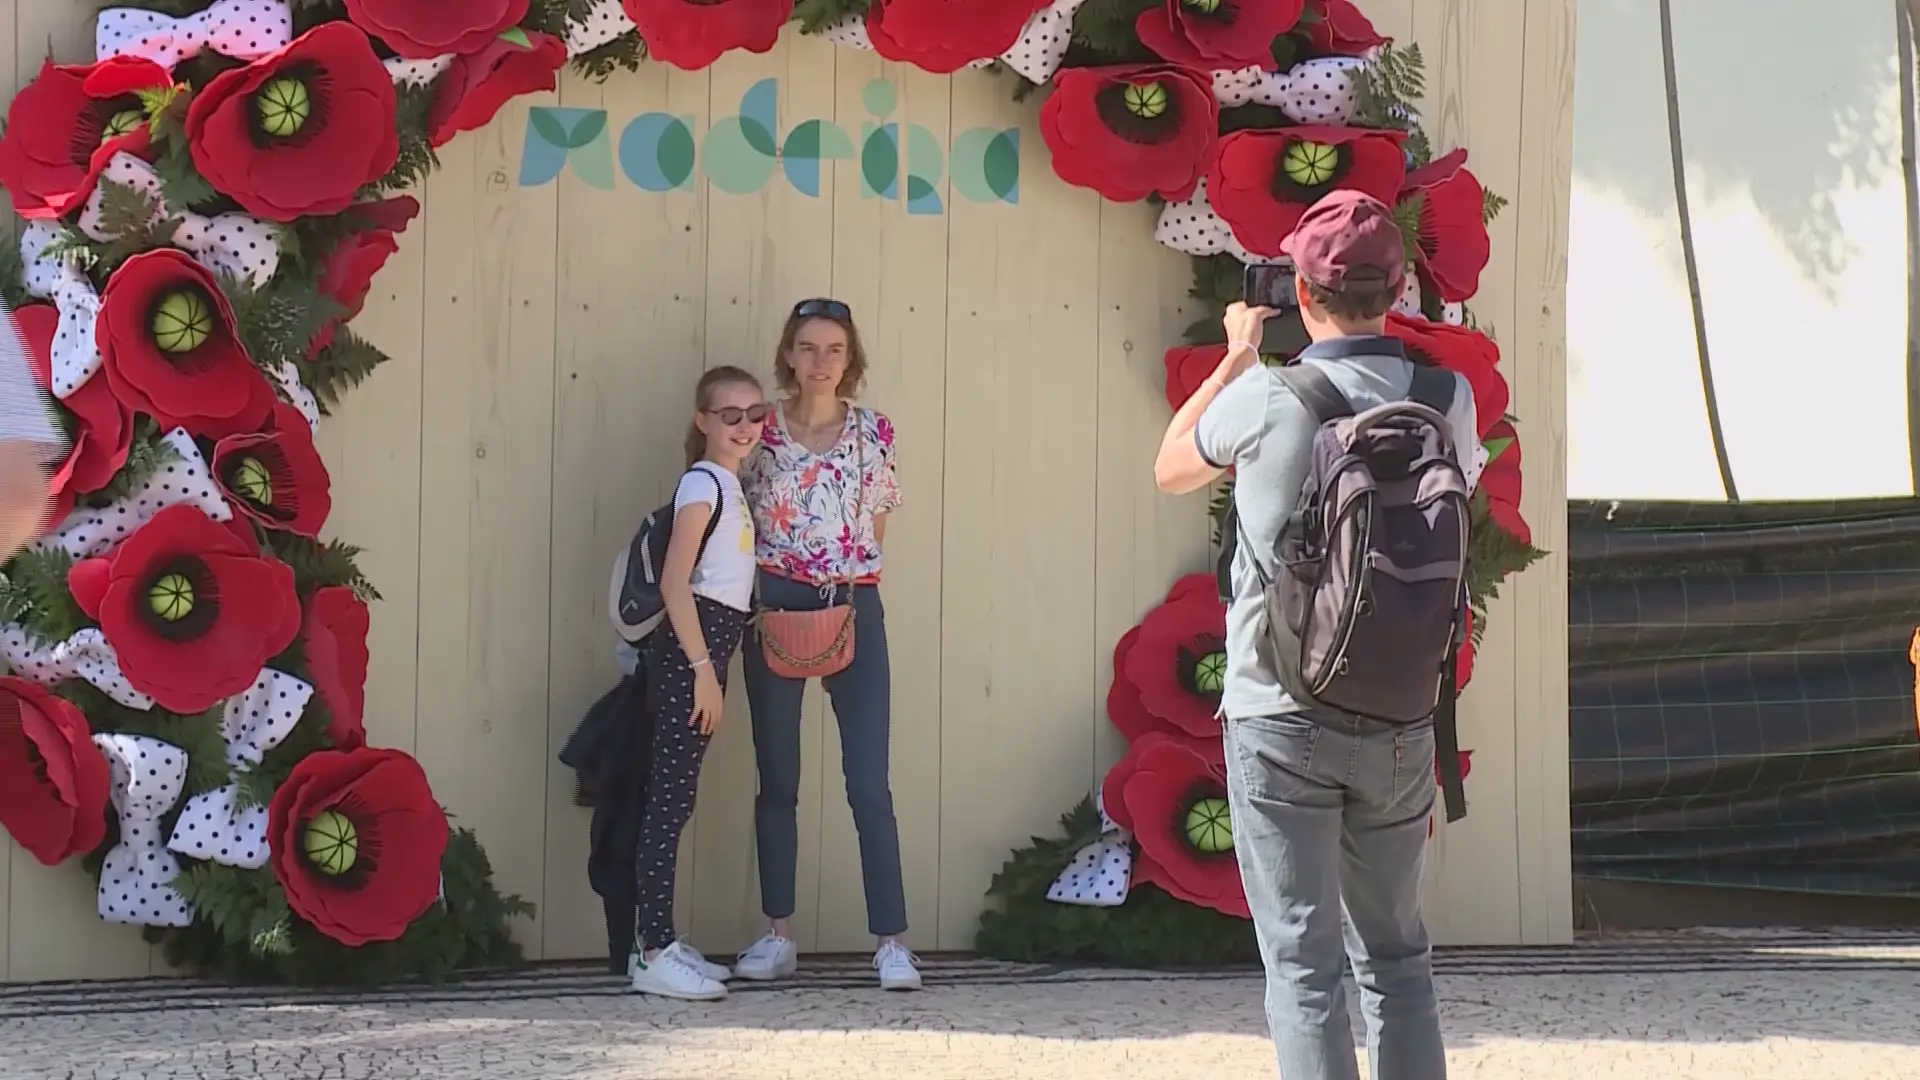 Festa da Flor da Madeira: há mais do que tapetes de flores para ver no Funchal